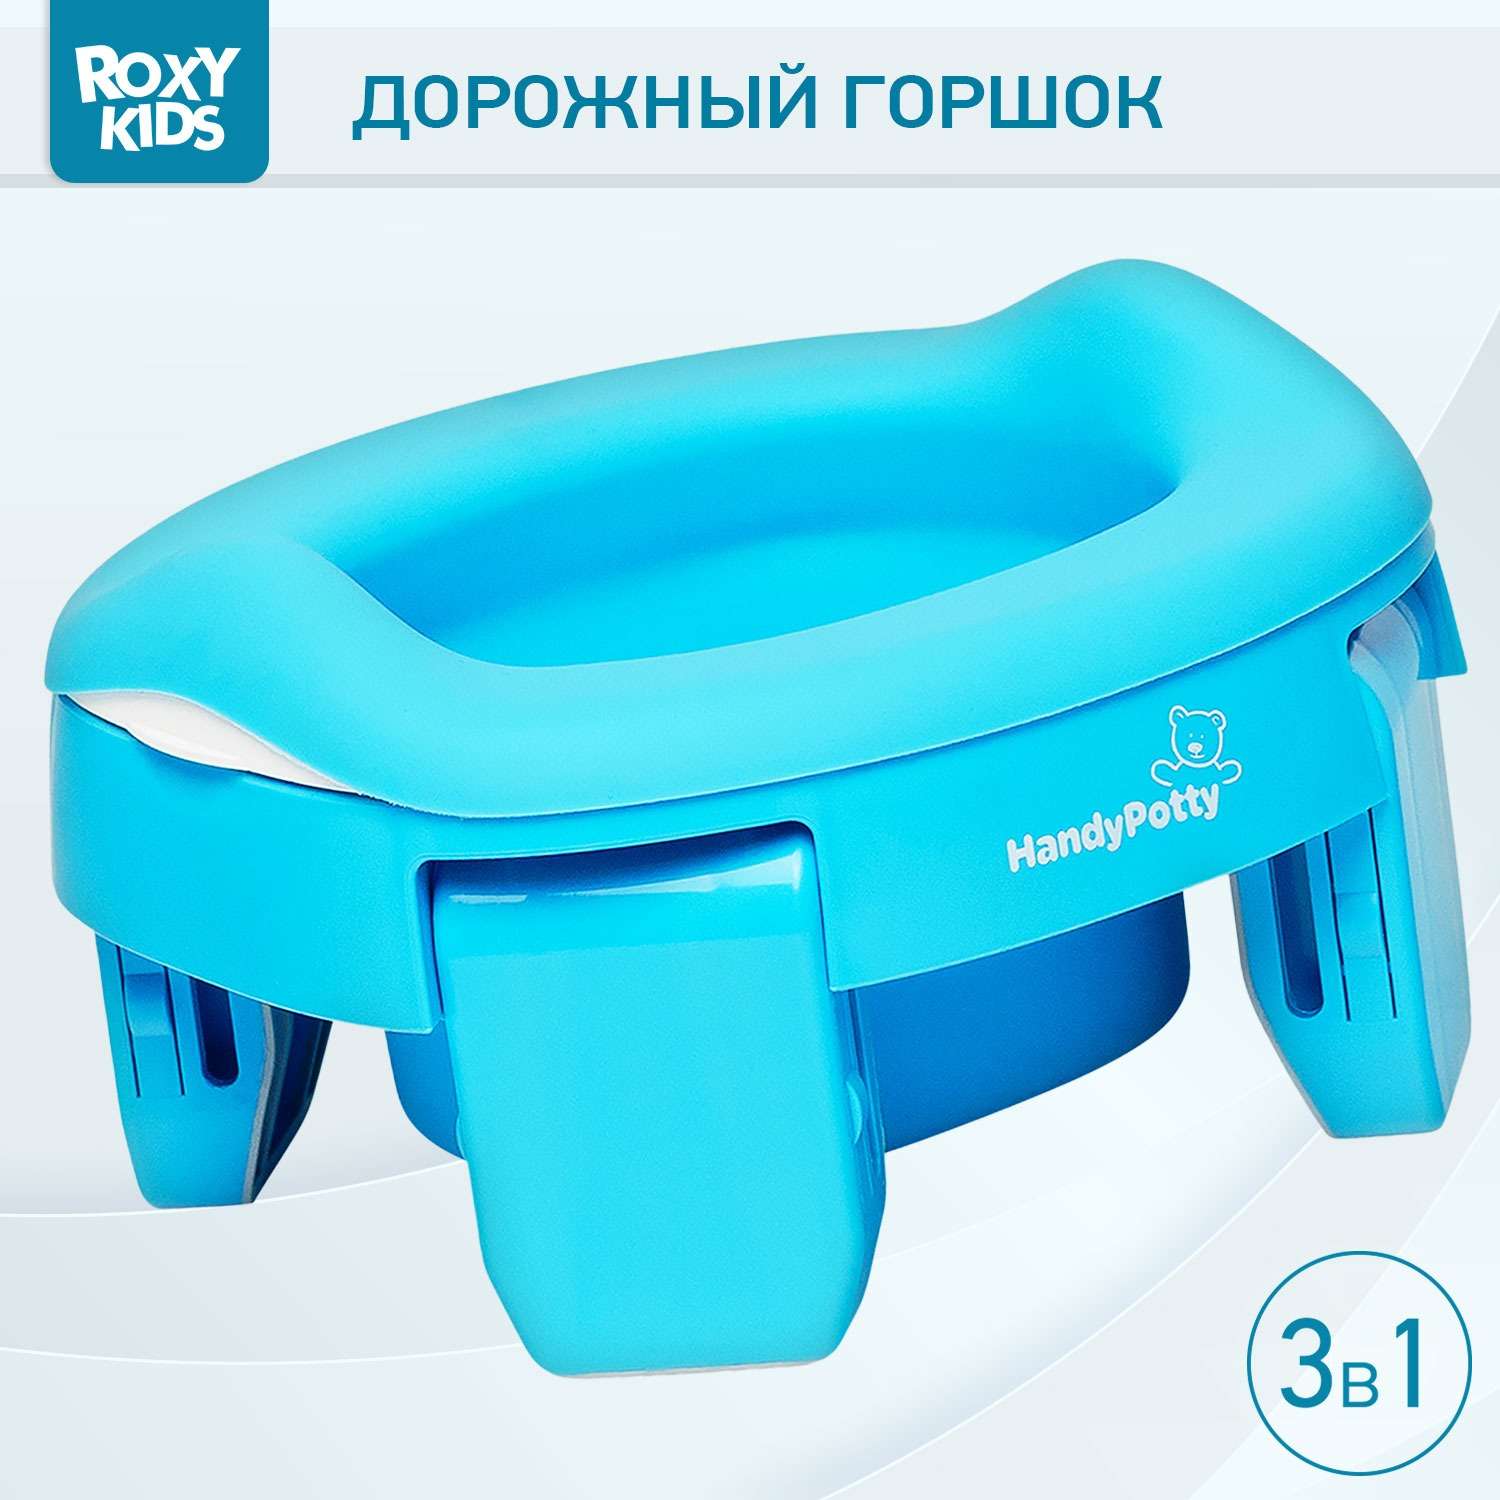 Горшок дорожный ROXY-KIDS складной с многоразовой вкладкой HandyPotty 3 в 1 цвет голубой/голубой - фото 1